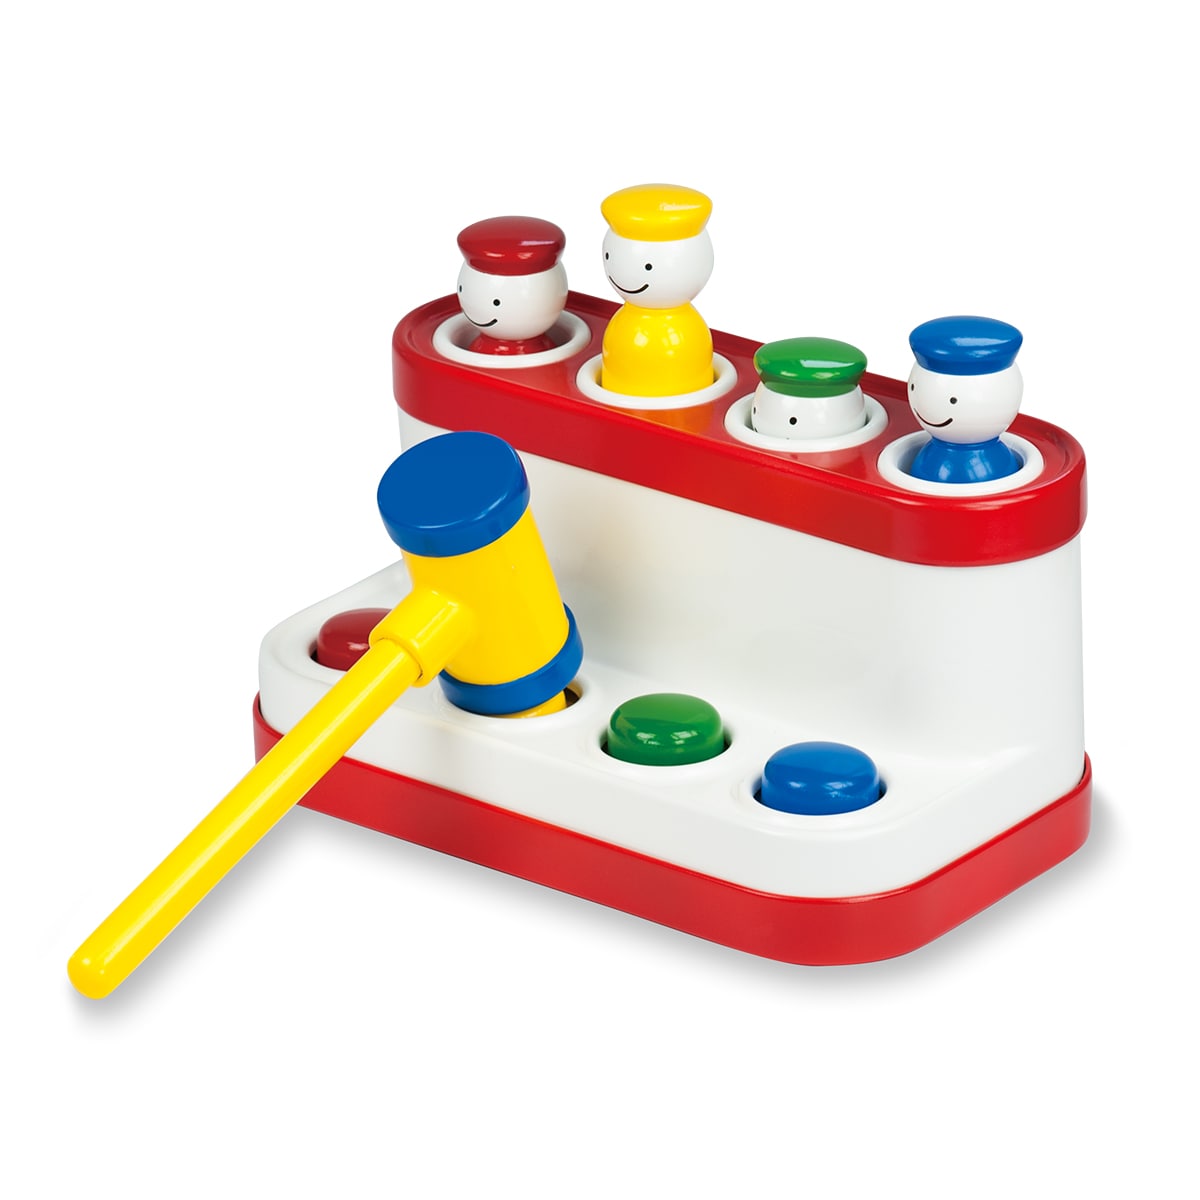 アンビトーイ・トドラーギフトセット: ボーネルンド オンラインショップ。世界中の知育玩具など、あそび道具がたくさん。0歳からのお子様へのプレゼントにも。